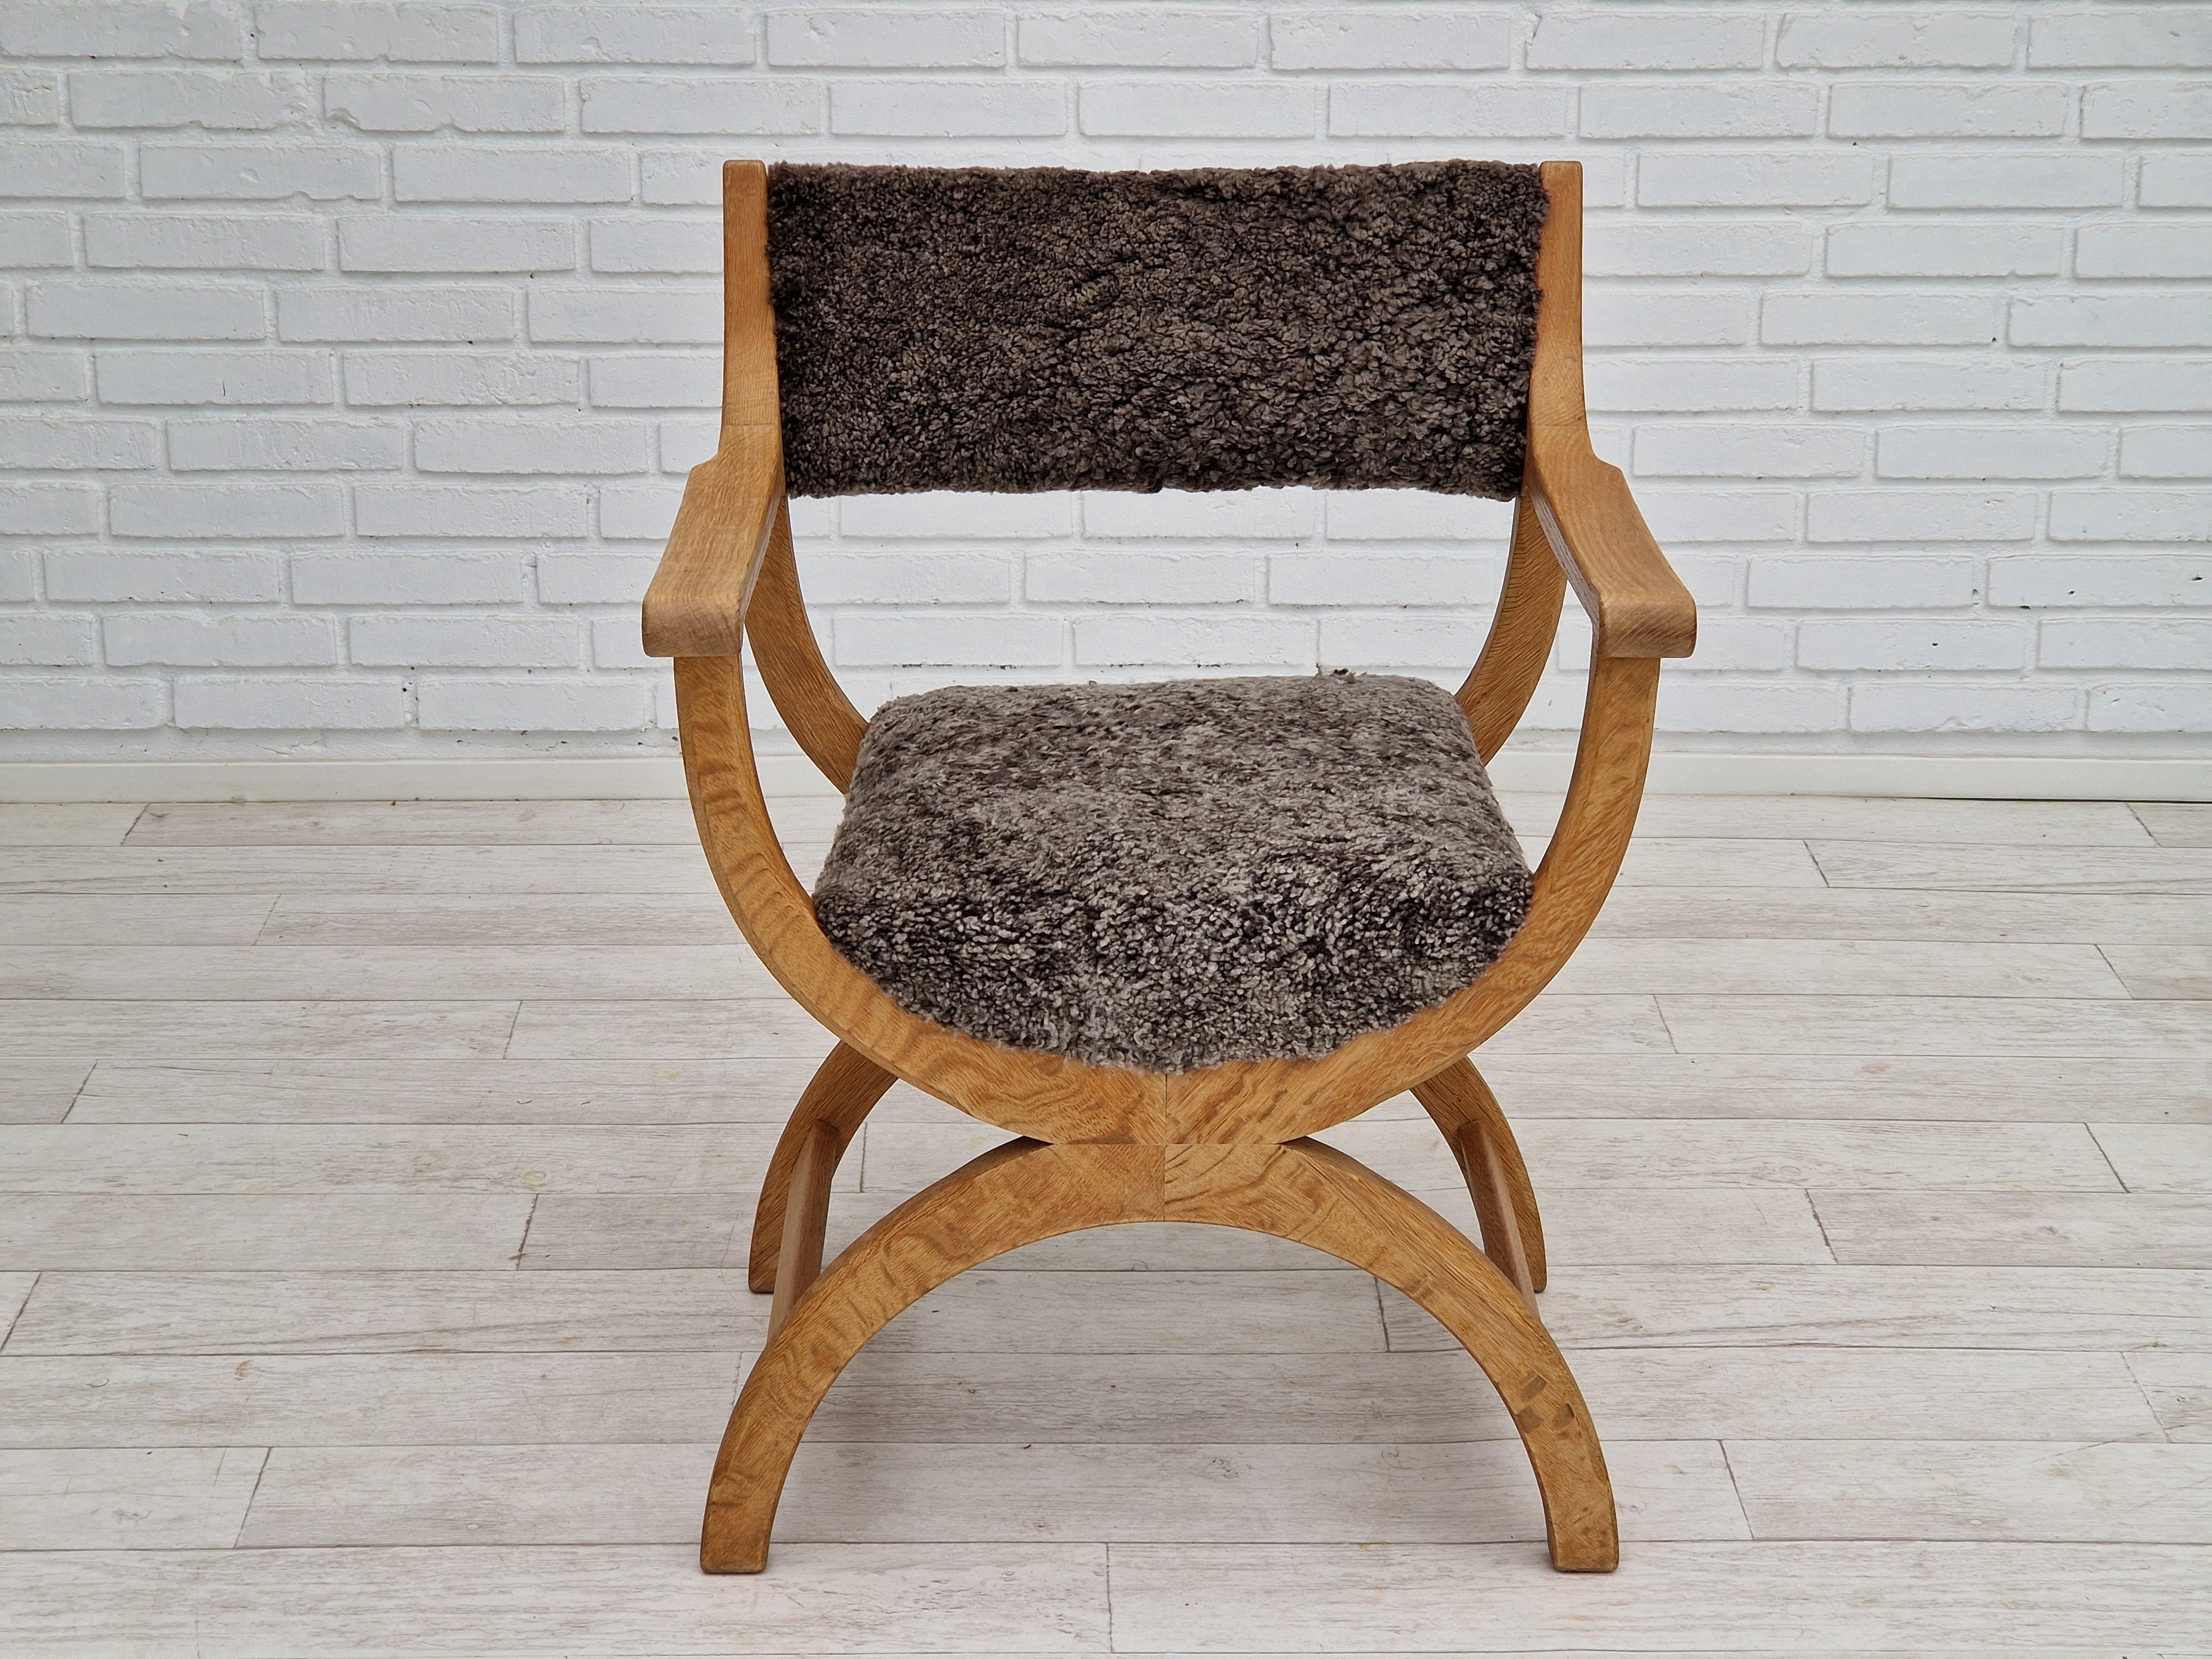 1960s, Danish Design, Reupholstered Vintage Armchair, Model 